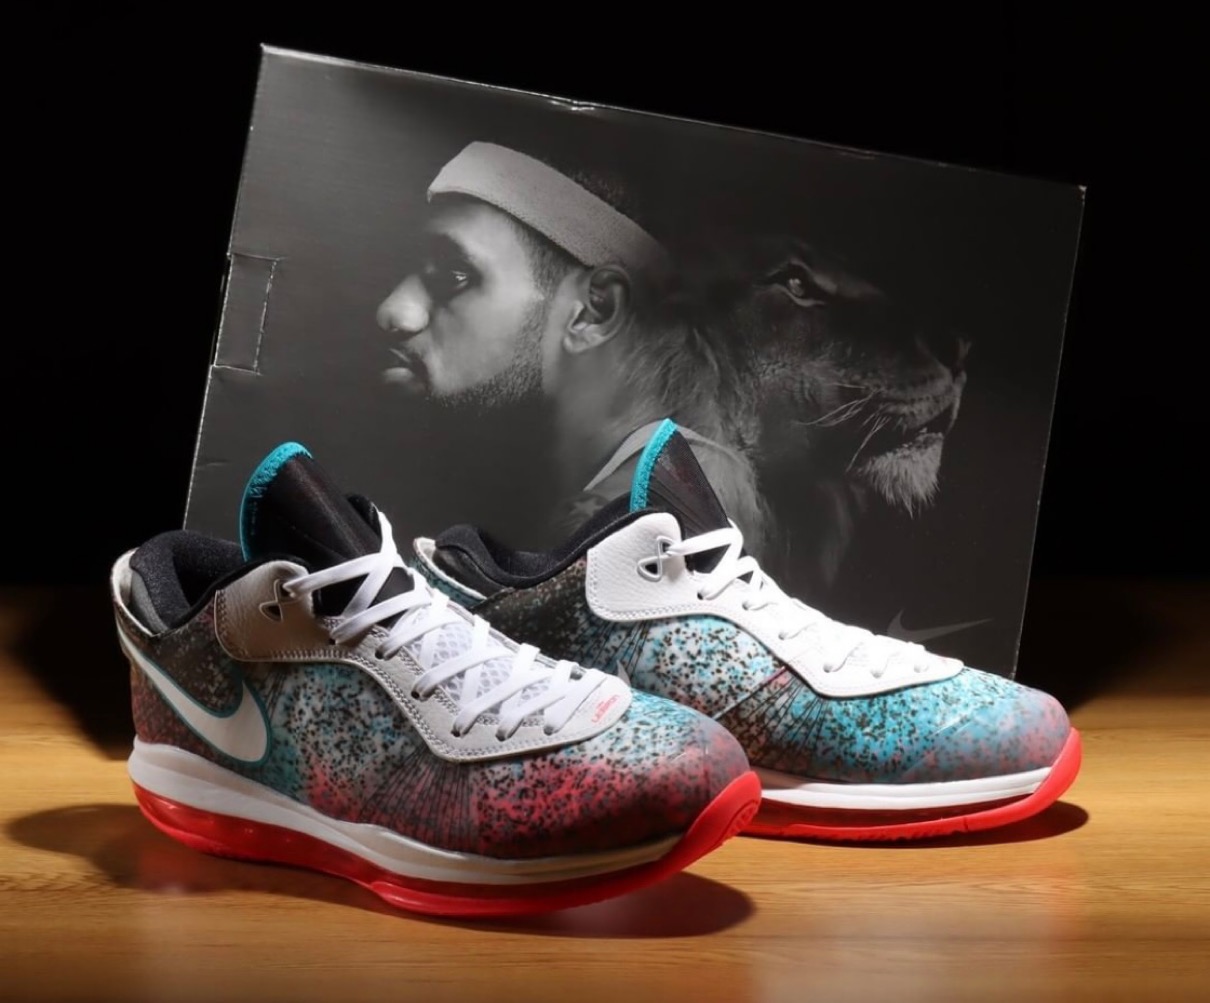 Nike】LeBron 8 V2 Low QS “Miami Nights”が国内5月11日に復刻発売予定 